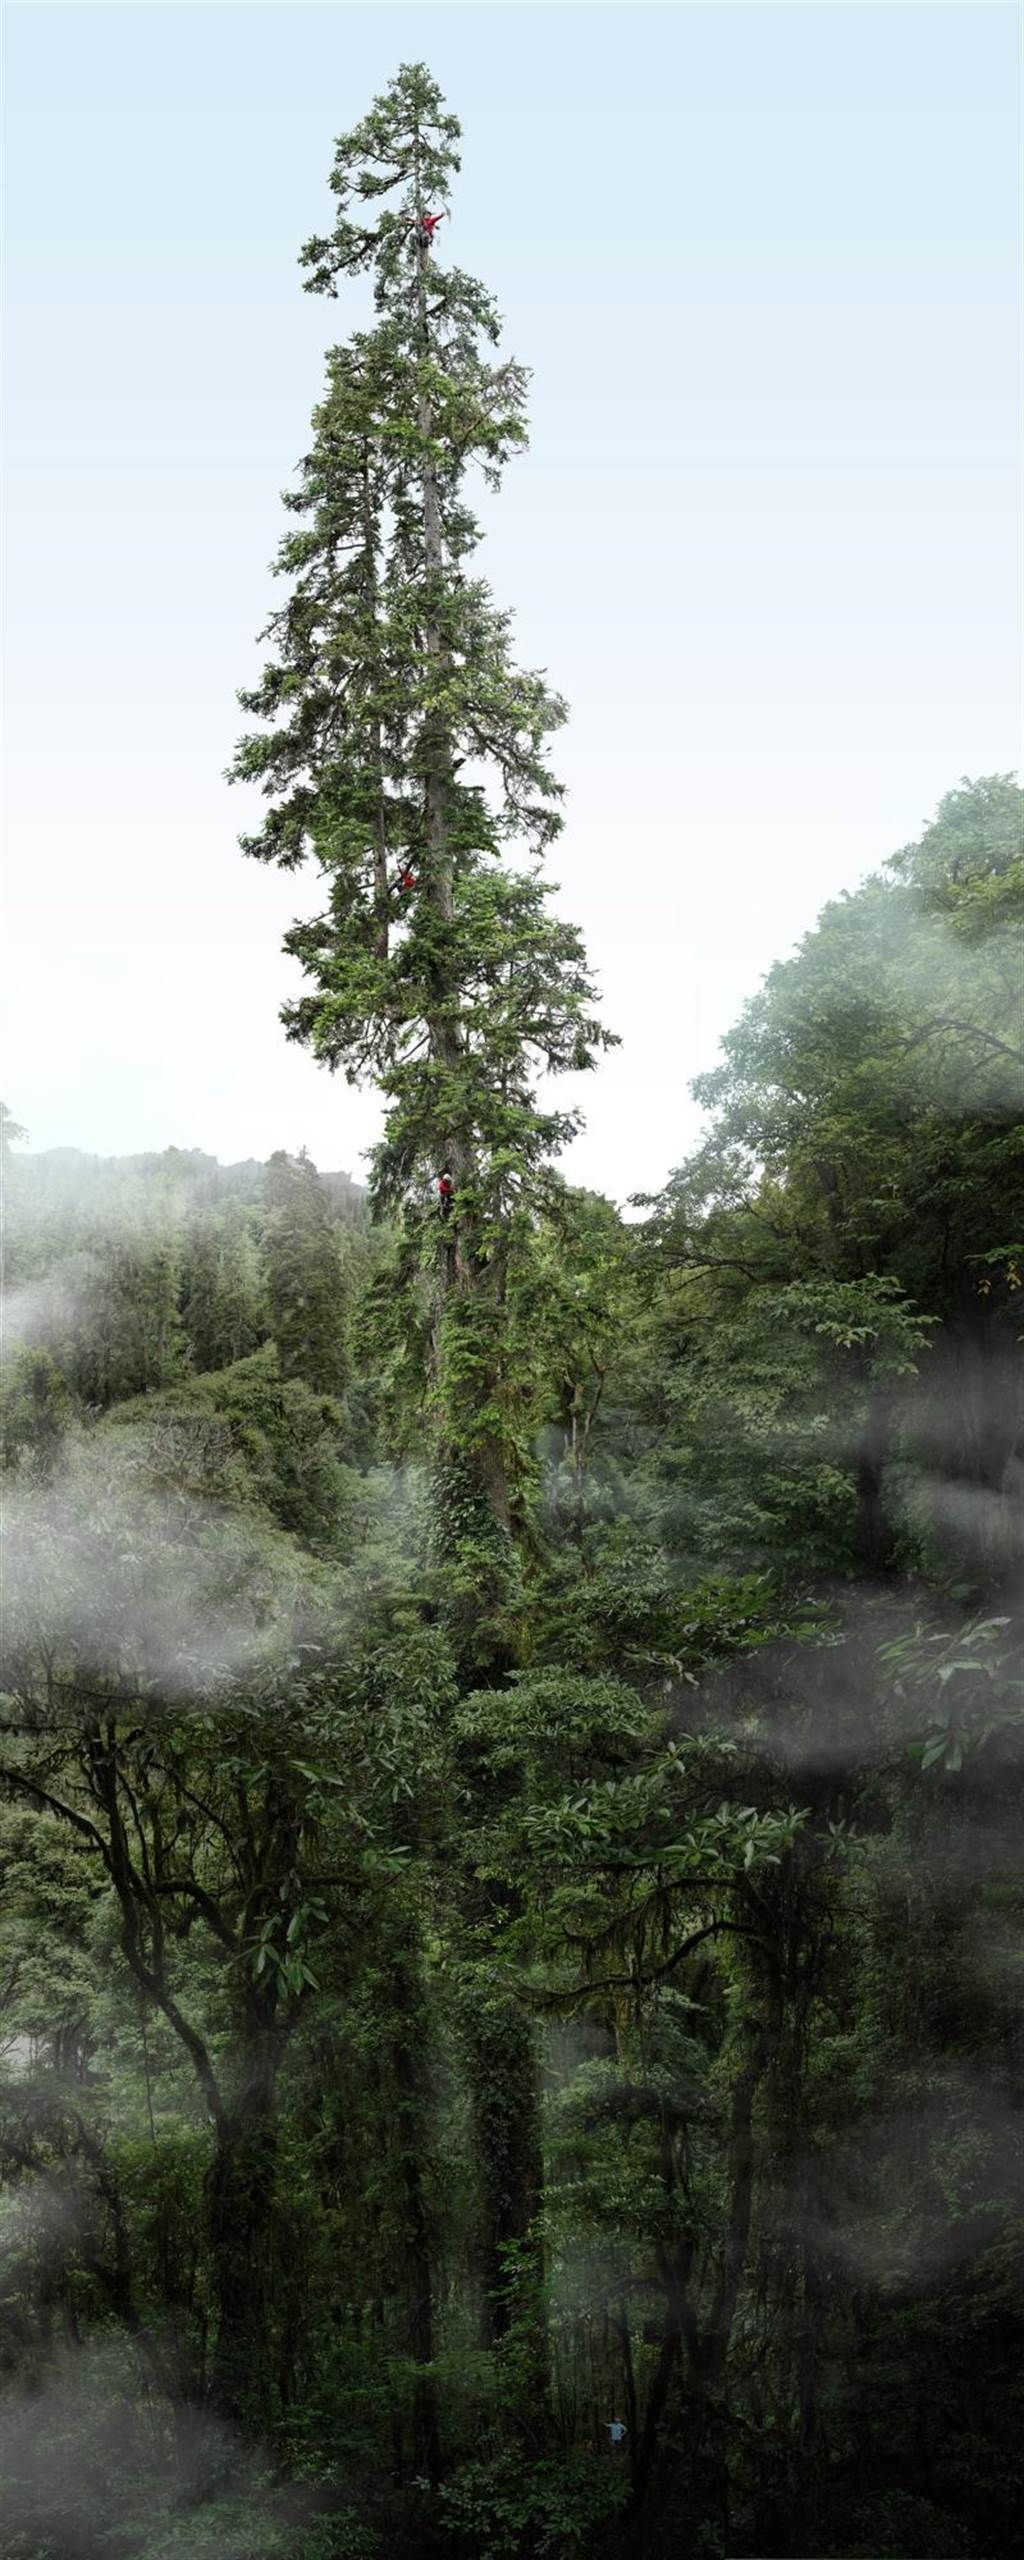 「中國第一高樹」雲南黃果冷杉的準確高度為83.4米。